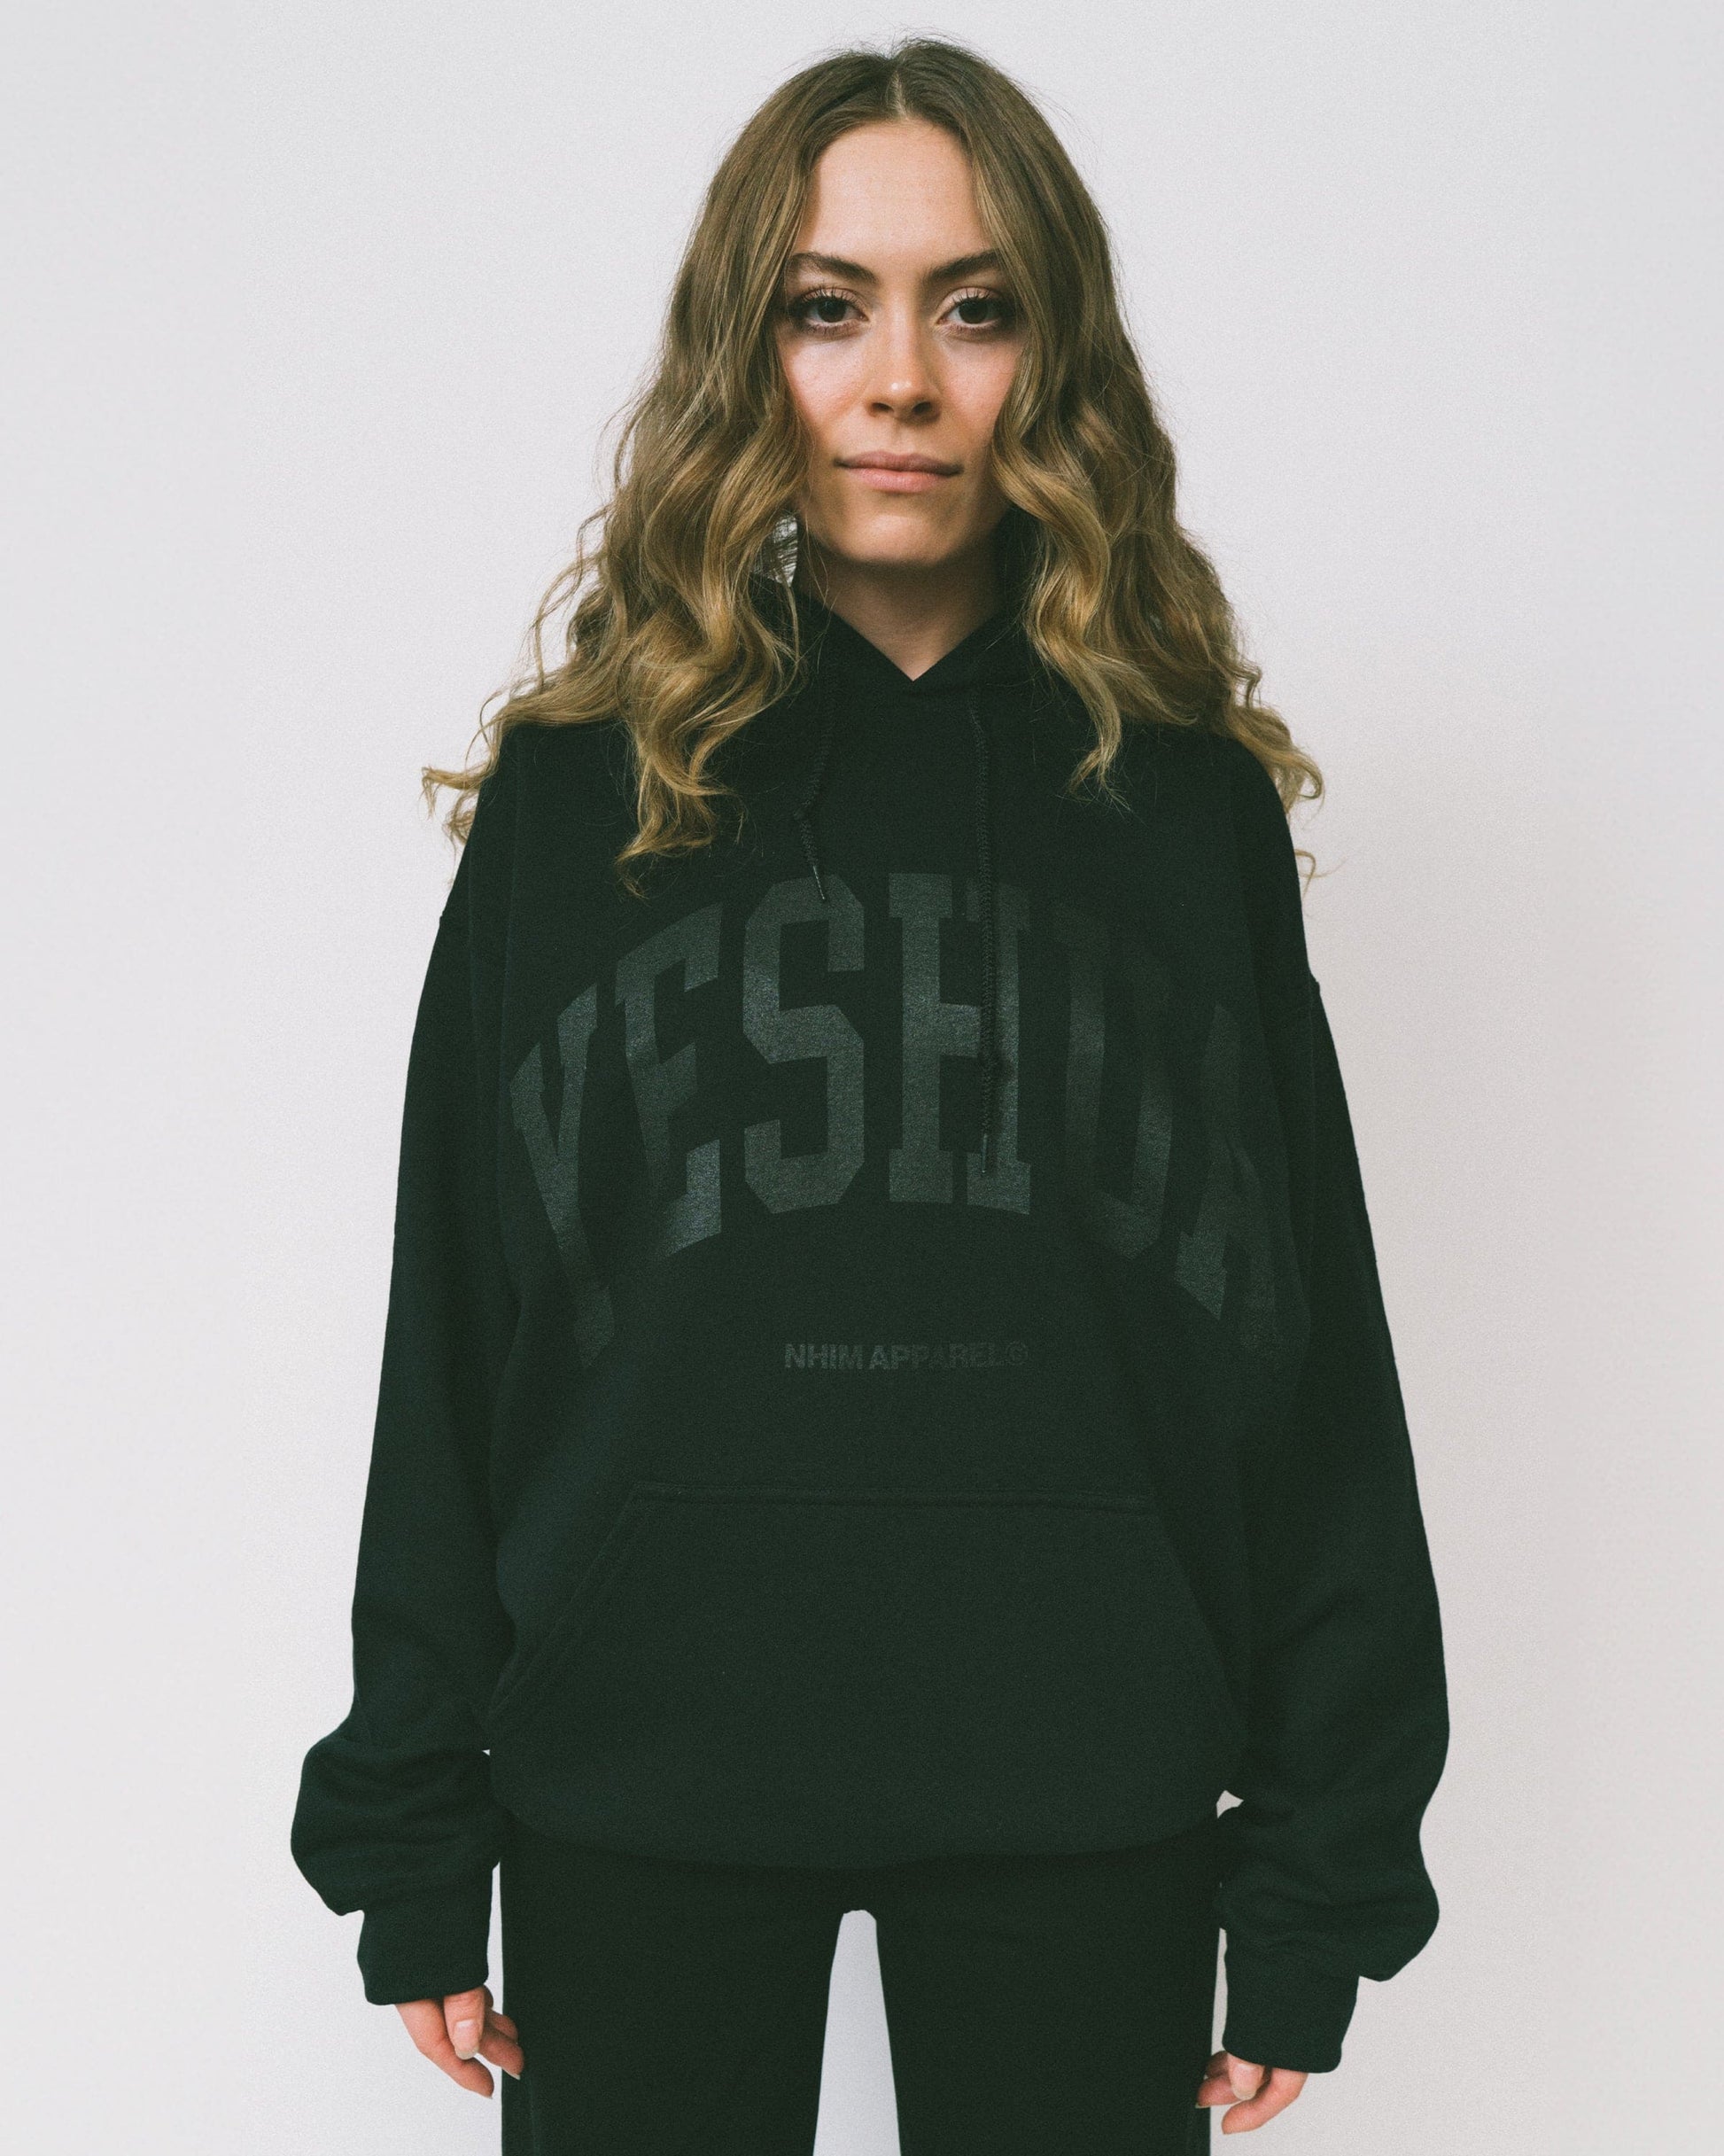 Yeshua hoodie YESHUA logo black hooded sweatshirt made by NHIM APPAREL christian clothing brand